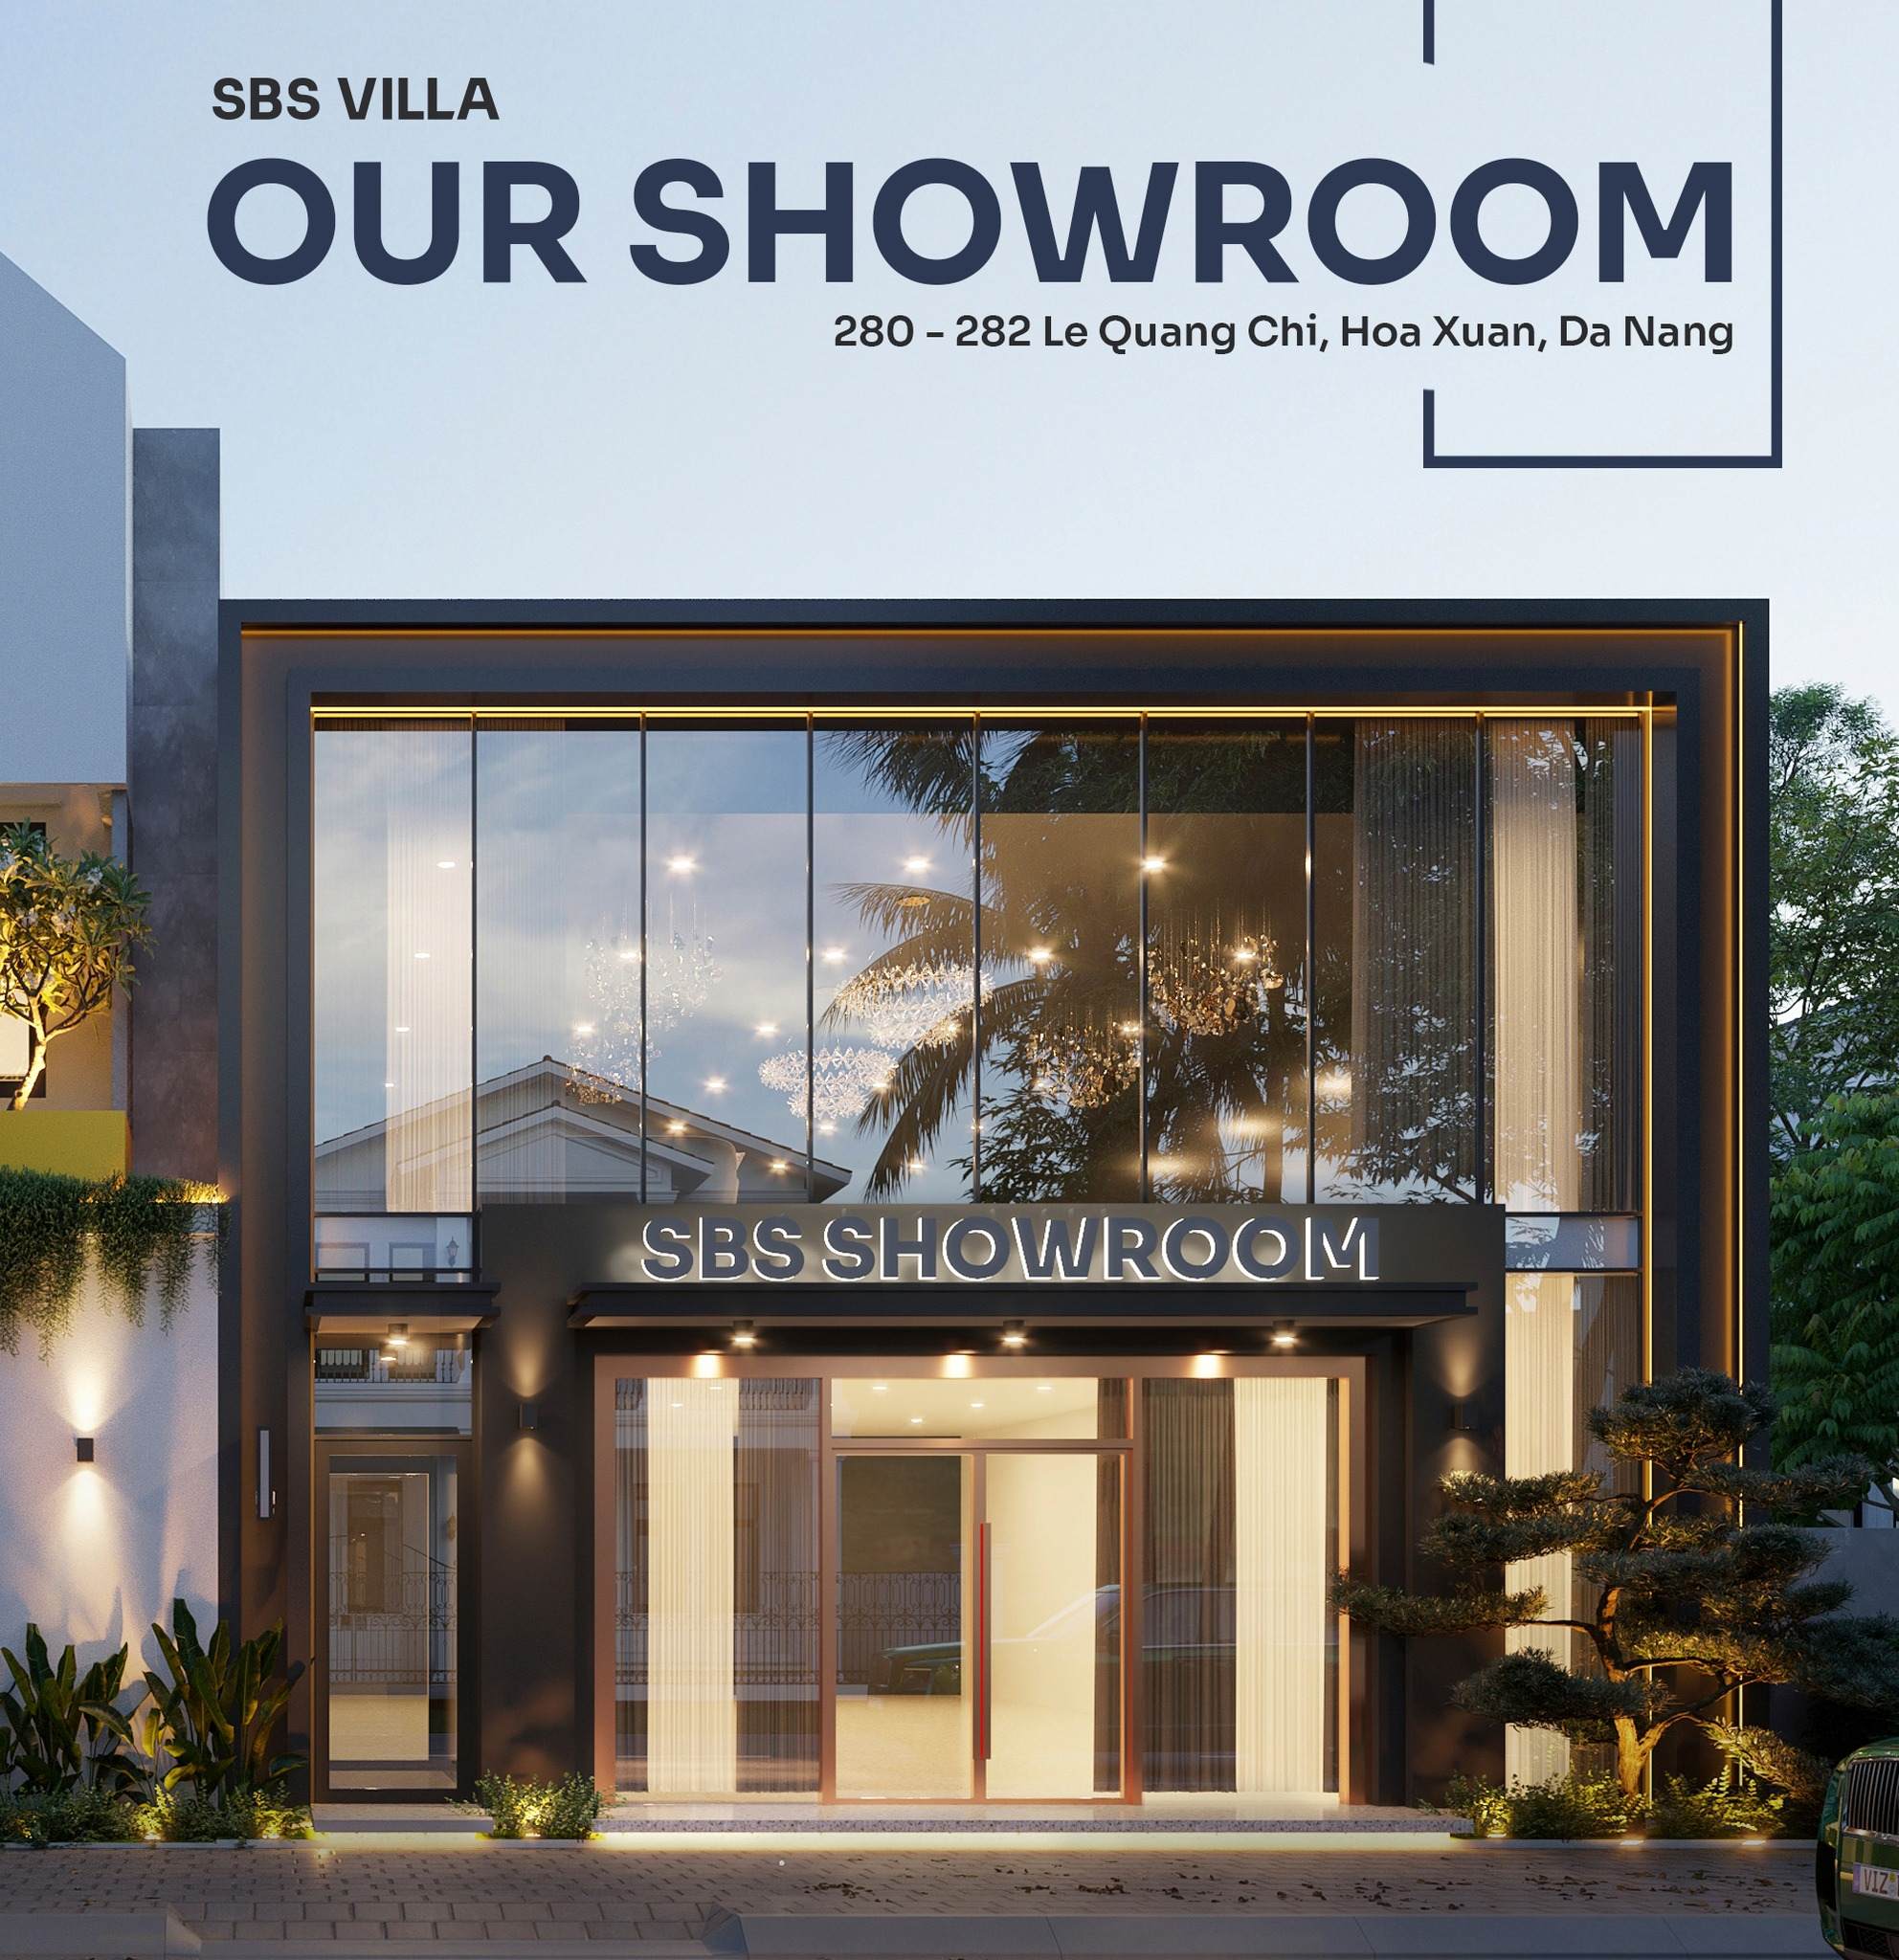 SBS VILLA sở hữu showroom nội thất lớn nhất thị trường Miền Trung